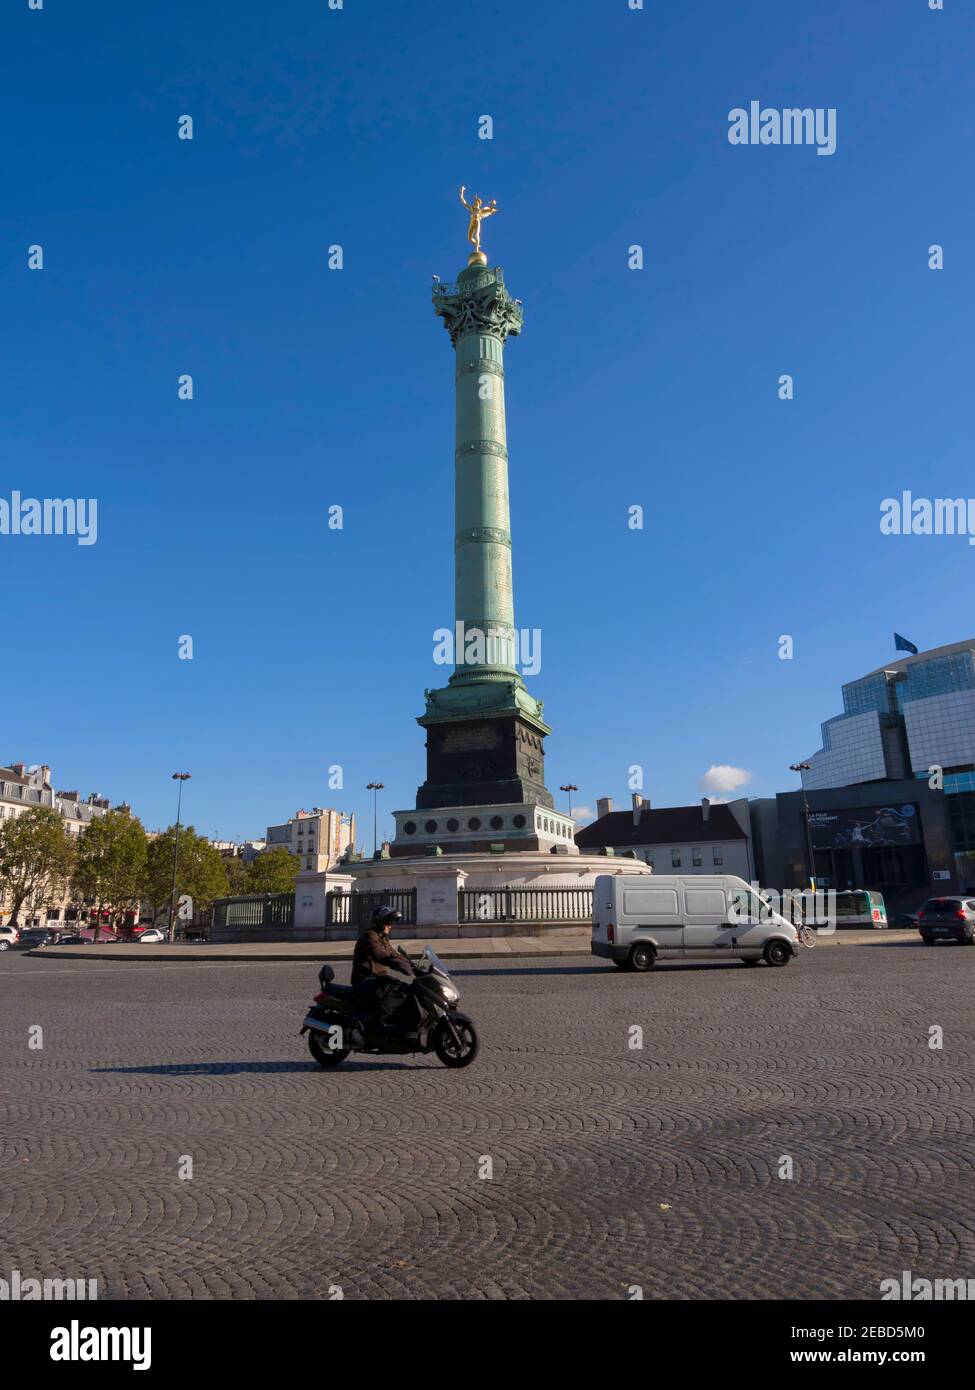 Colonne de Juillet, Paris. The July Column in the Place de la Bastille is a monument to the revolution of 1830. Stock Photo